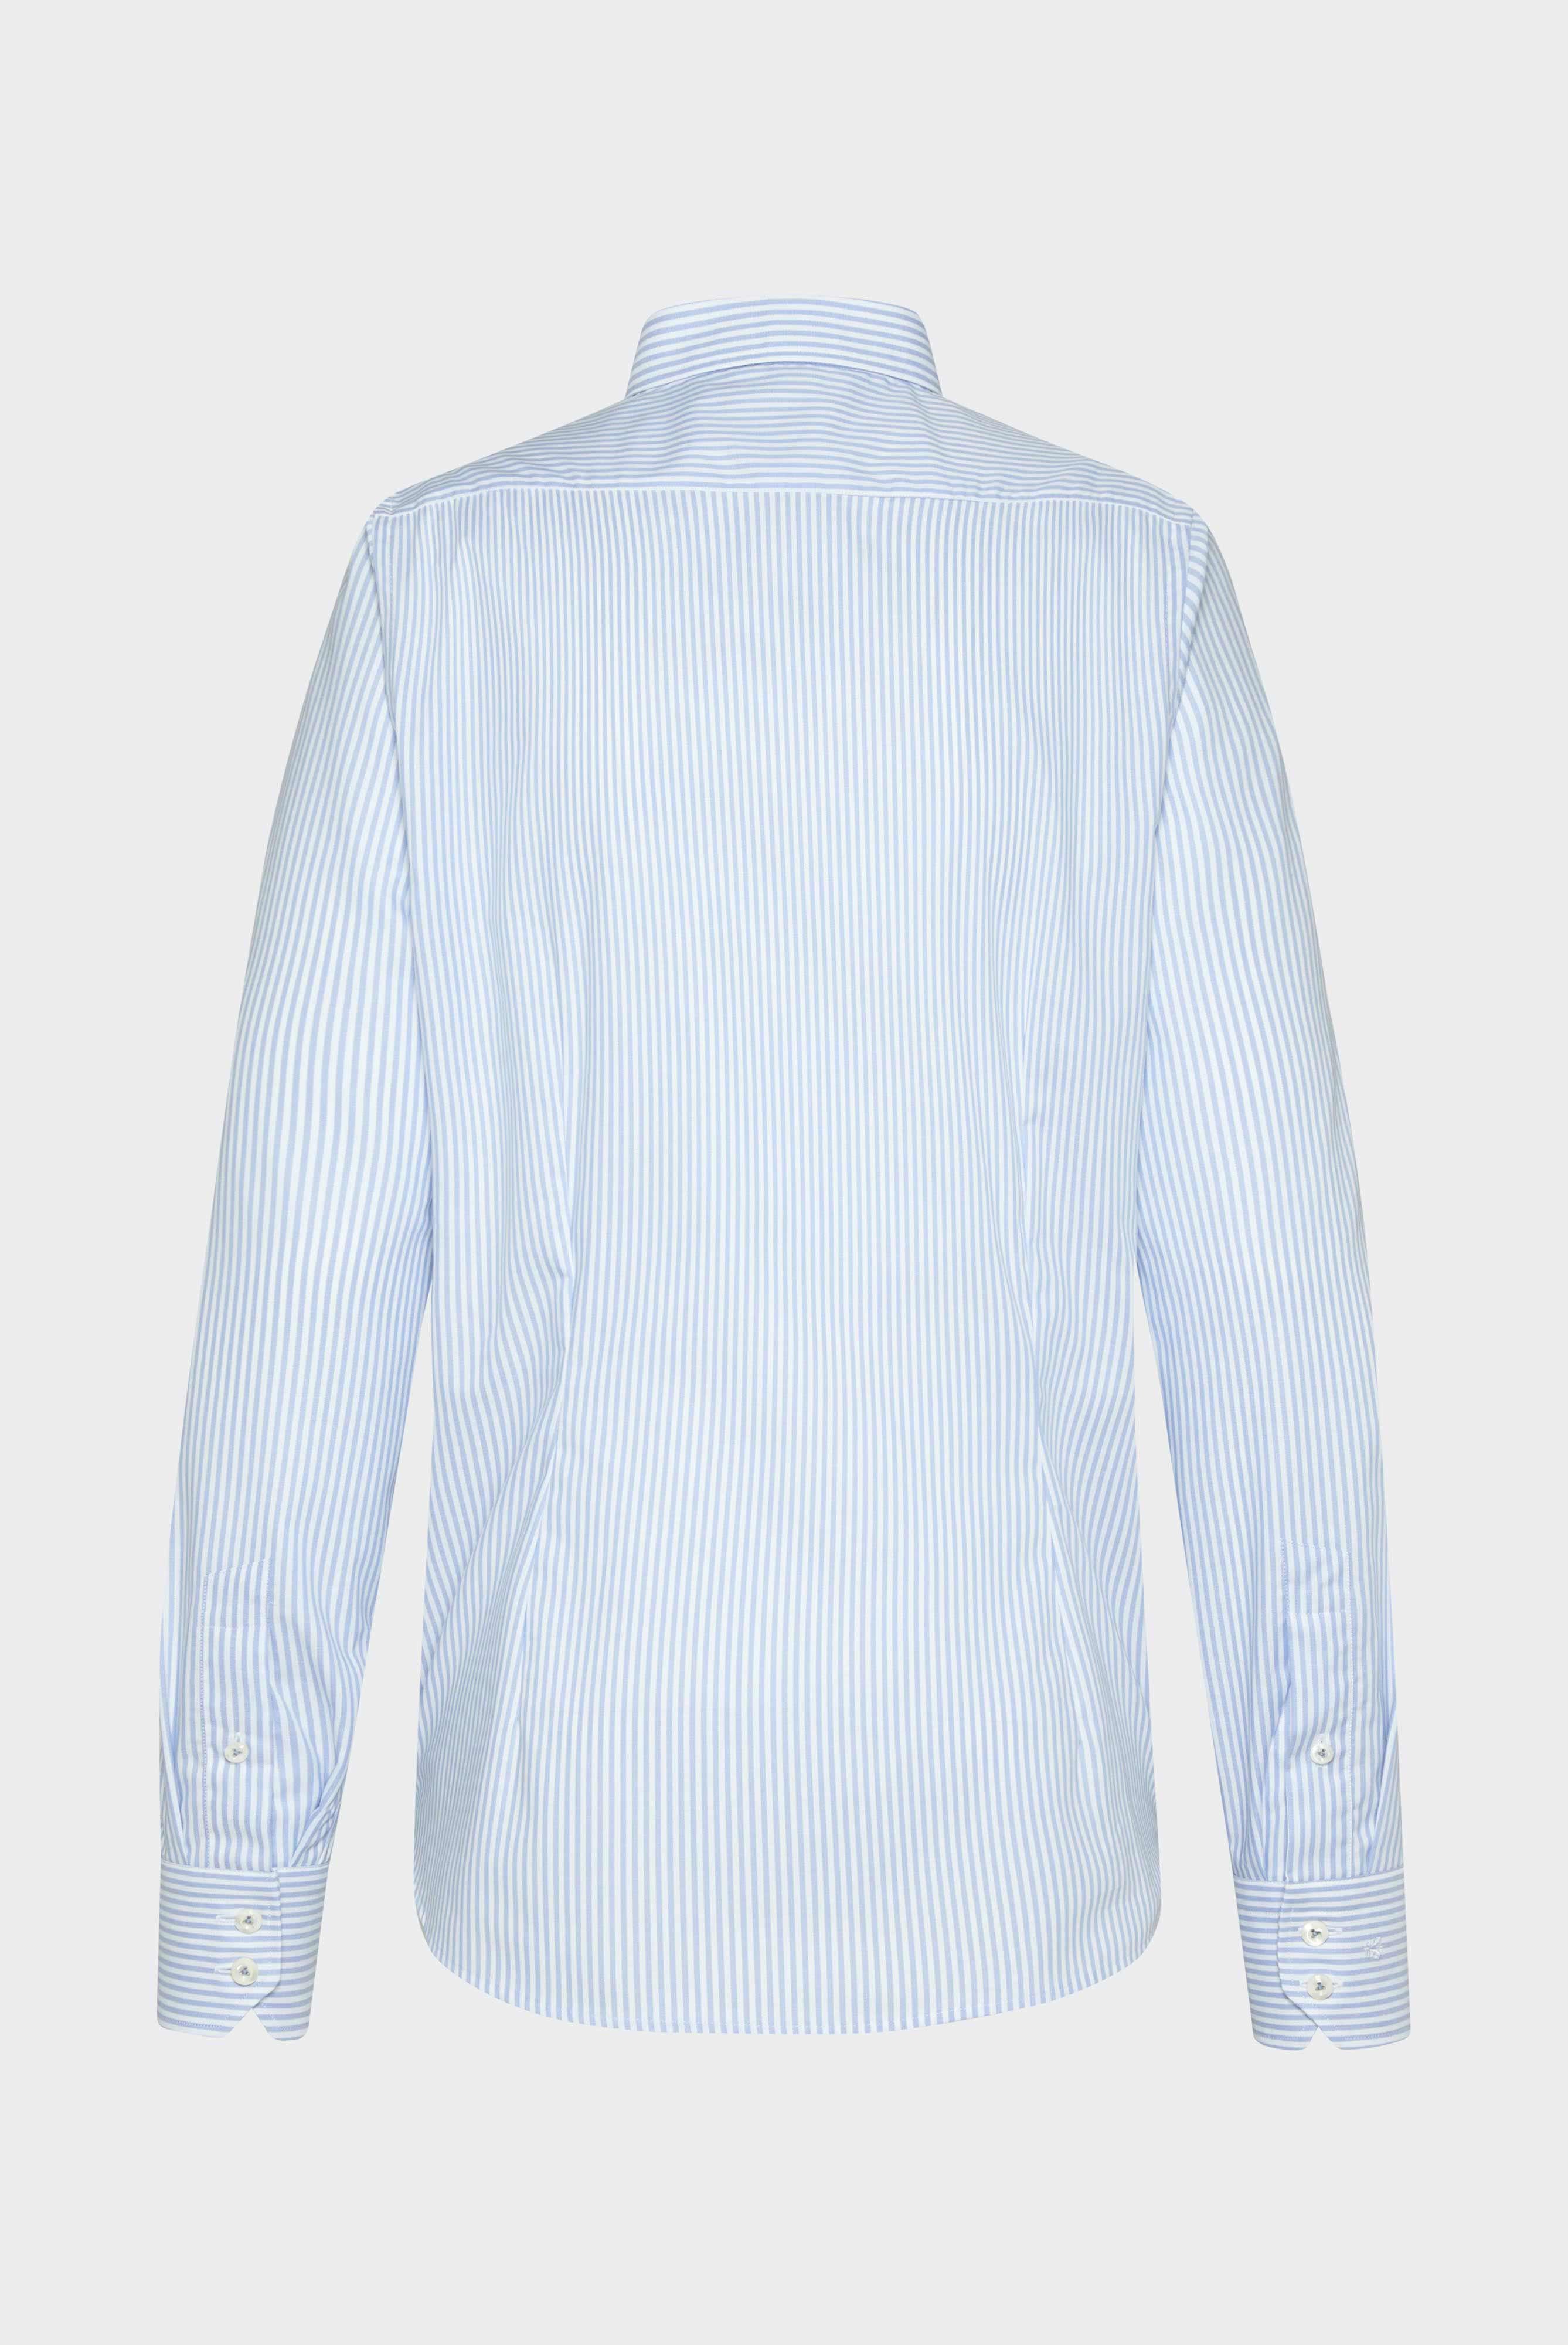 Business Hemden+Bügelfreies Hemd mit Streifen Tailor Fit+20.3281.NV.166020.730.37